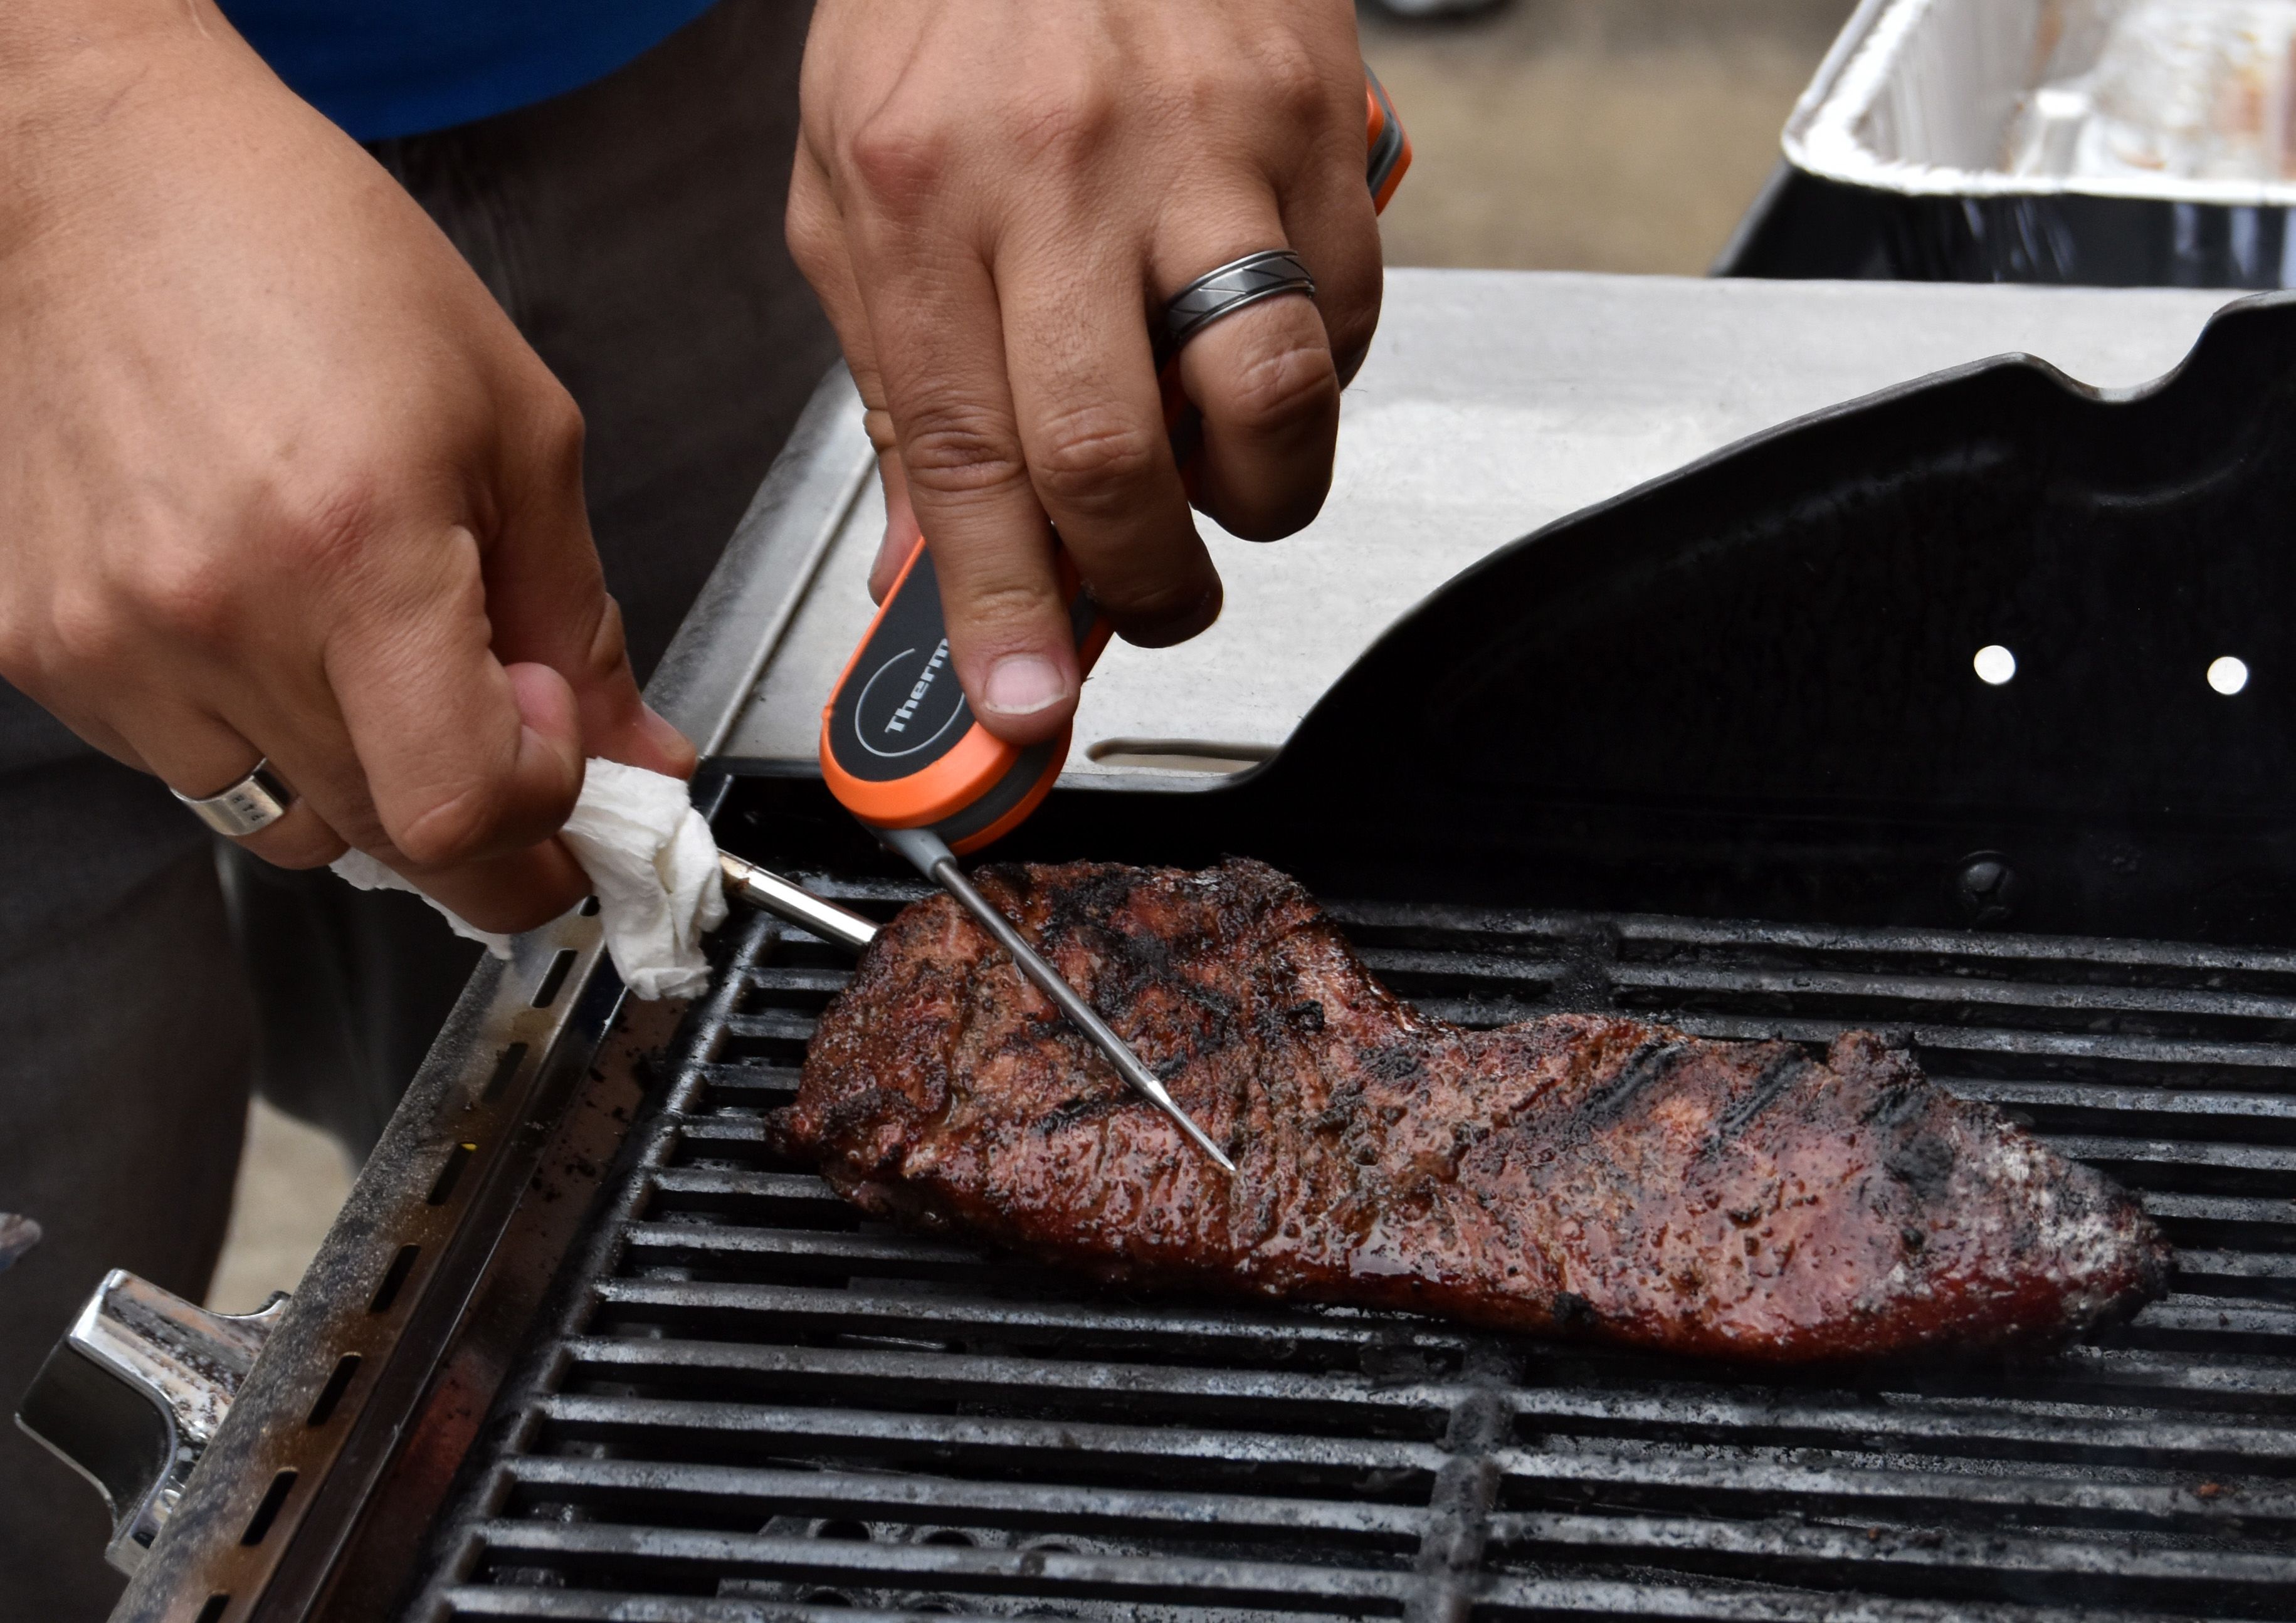 Gonzalez tests the internal temperature of a tri-tip steak